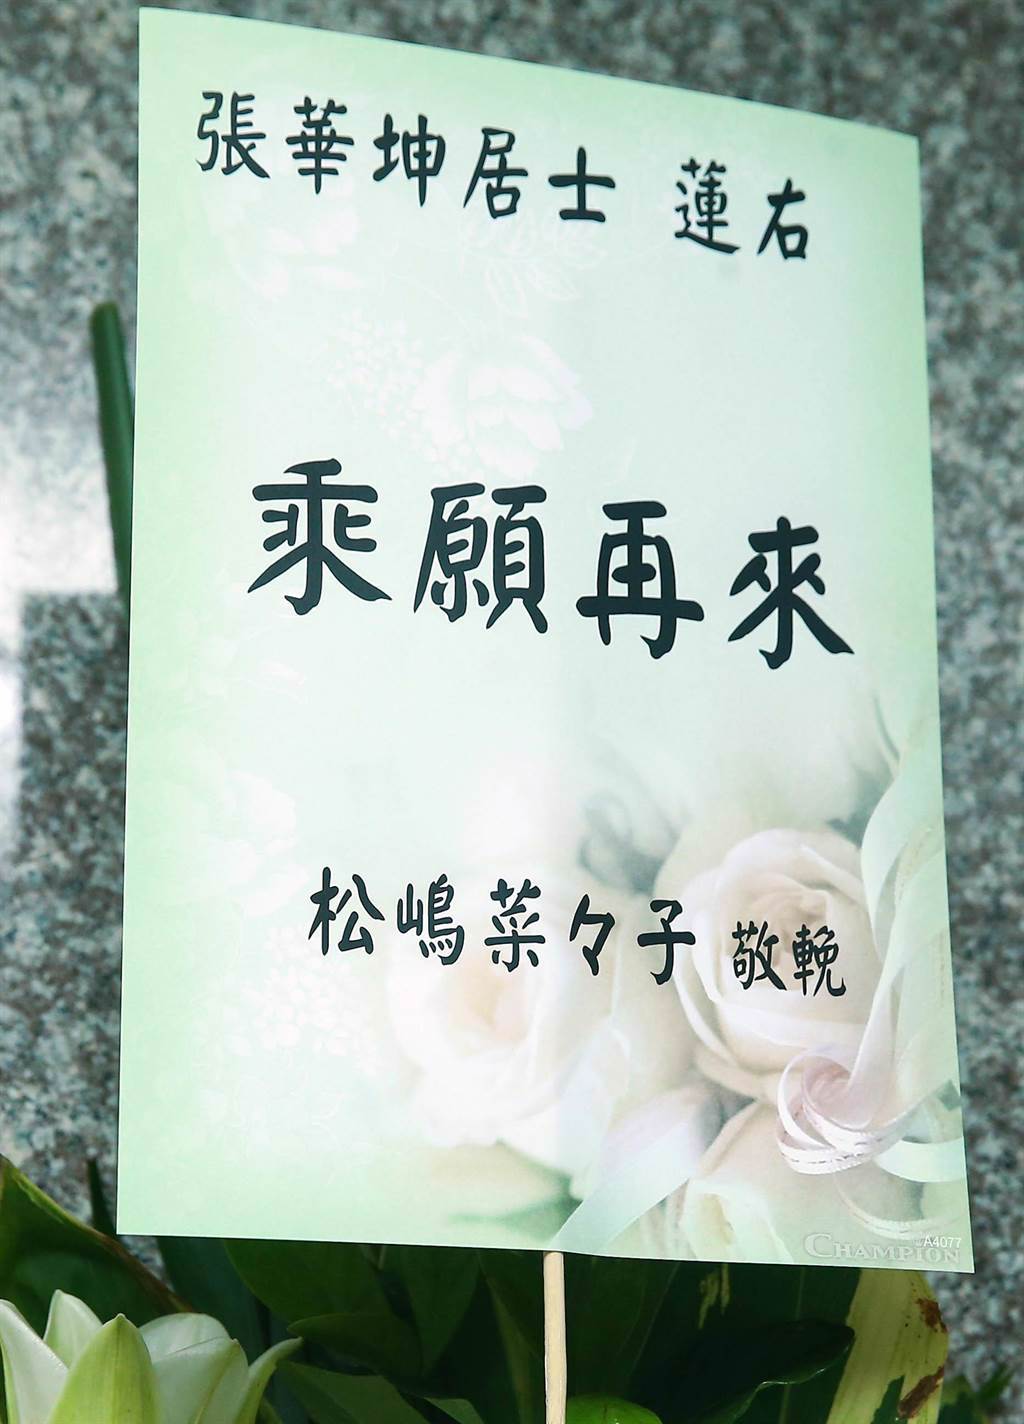 日星松嶋菜菜子致送花籃表達對張華坤的哀悼。（粘耿豪攝）